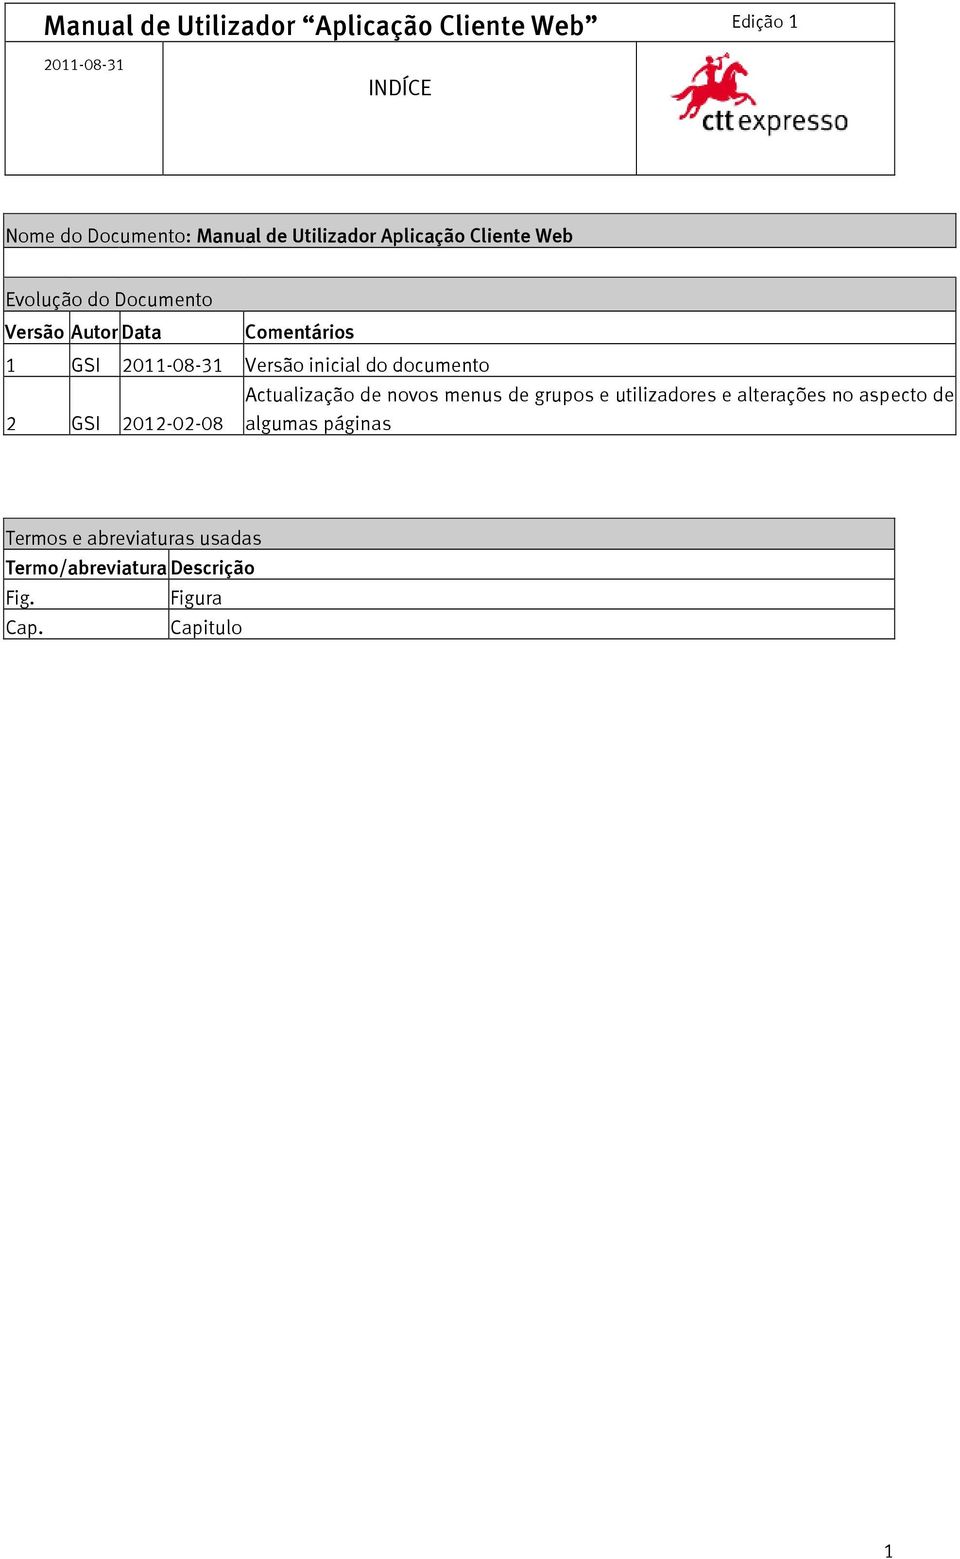 documento 2 GSI 2012-02-08 Actualização de novos menus de grupos e utilizadores e alterações no